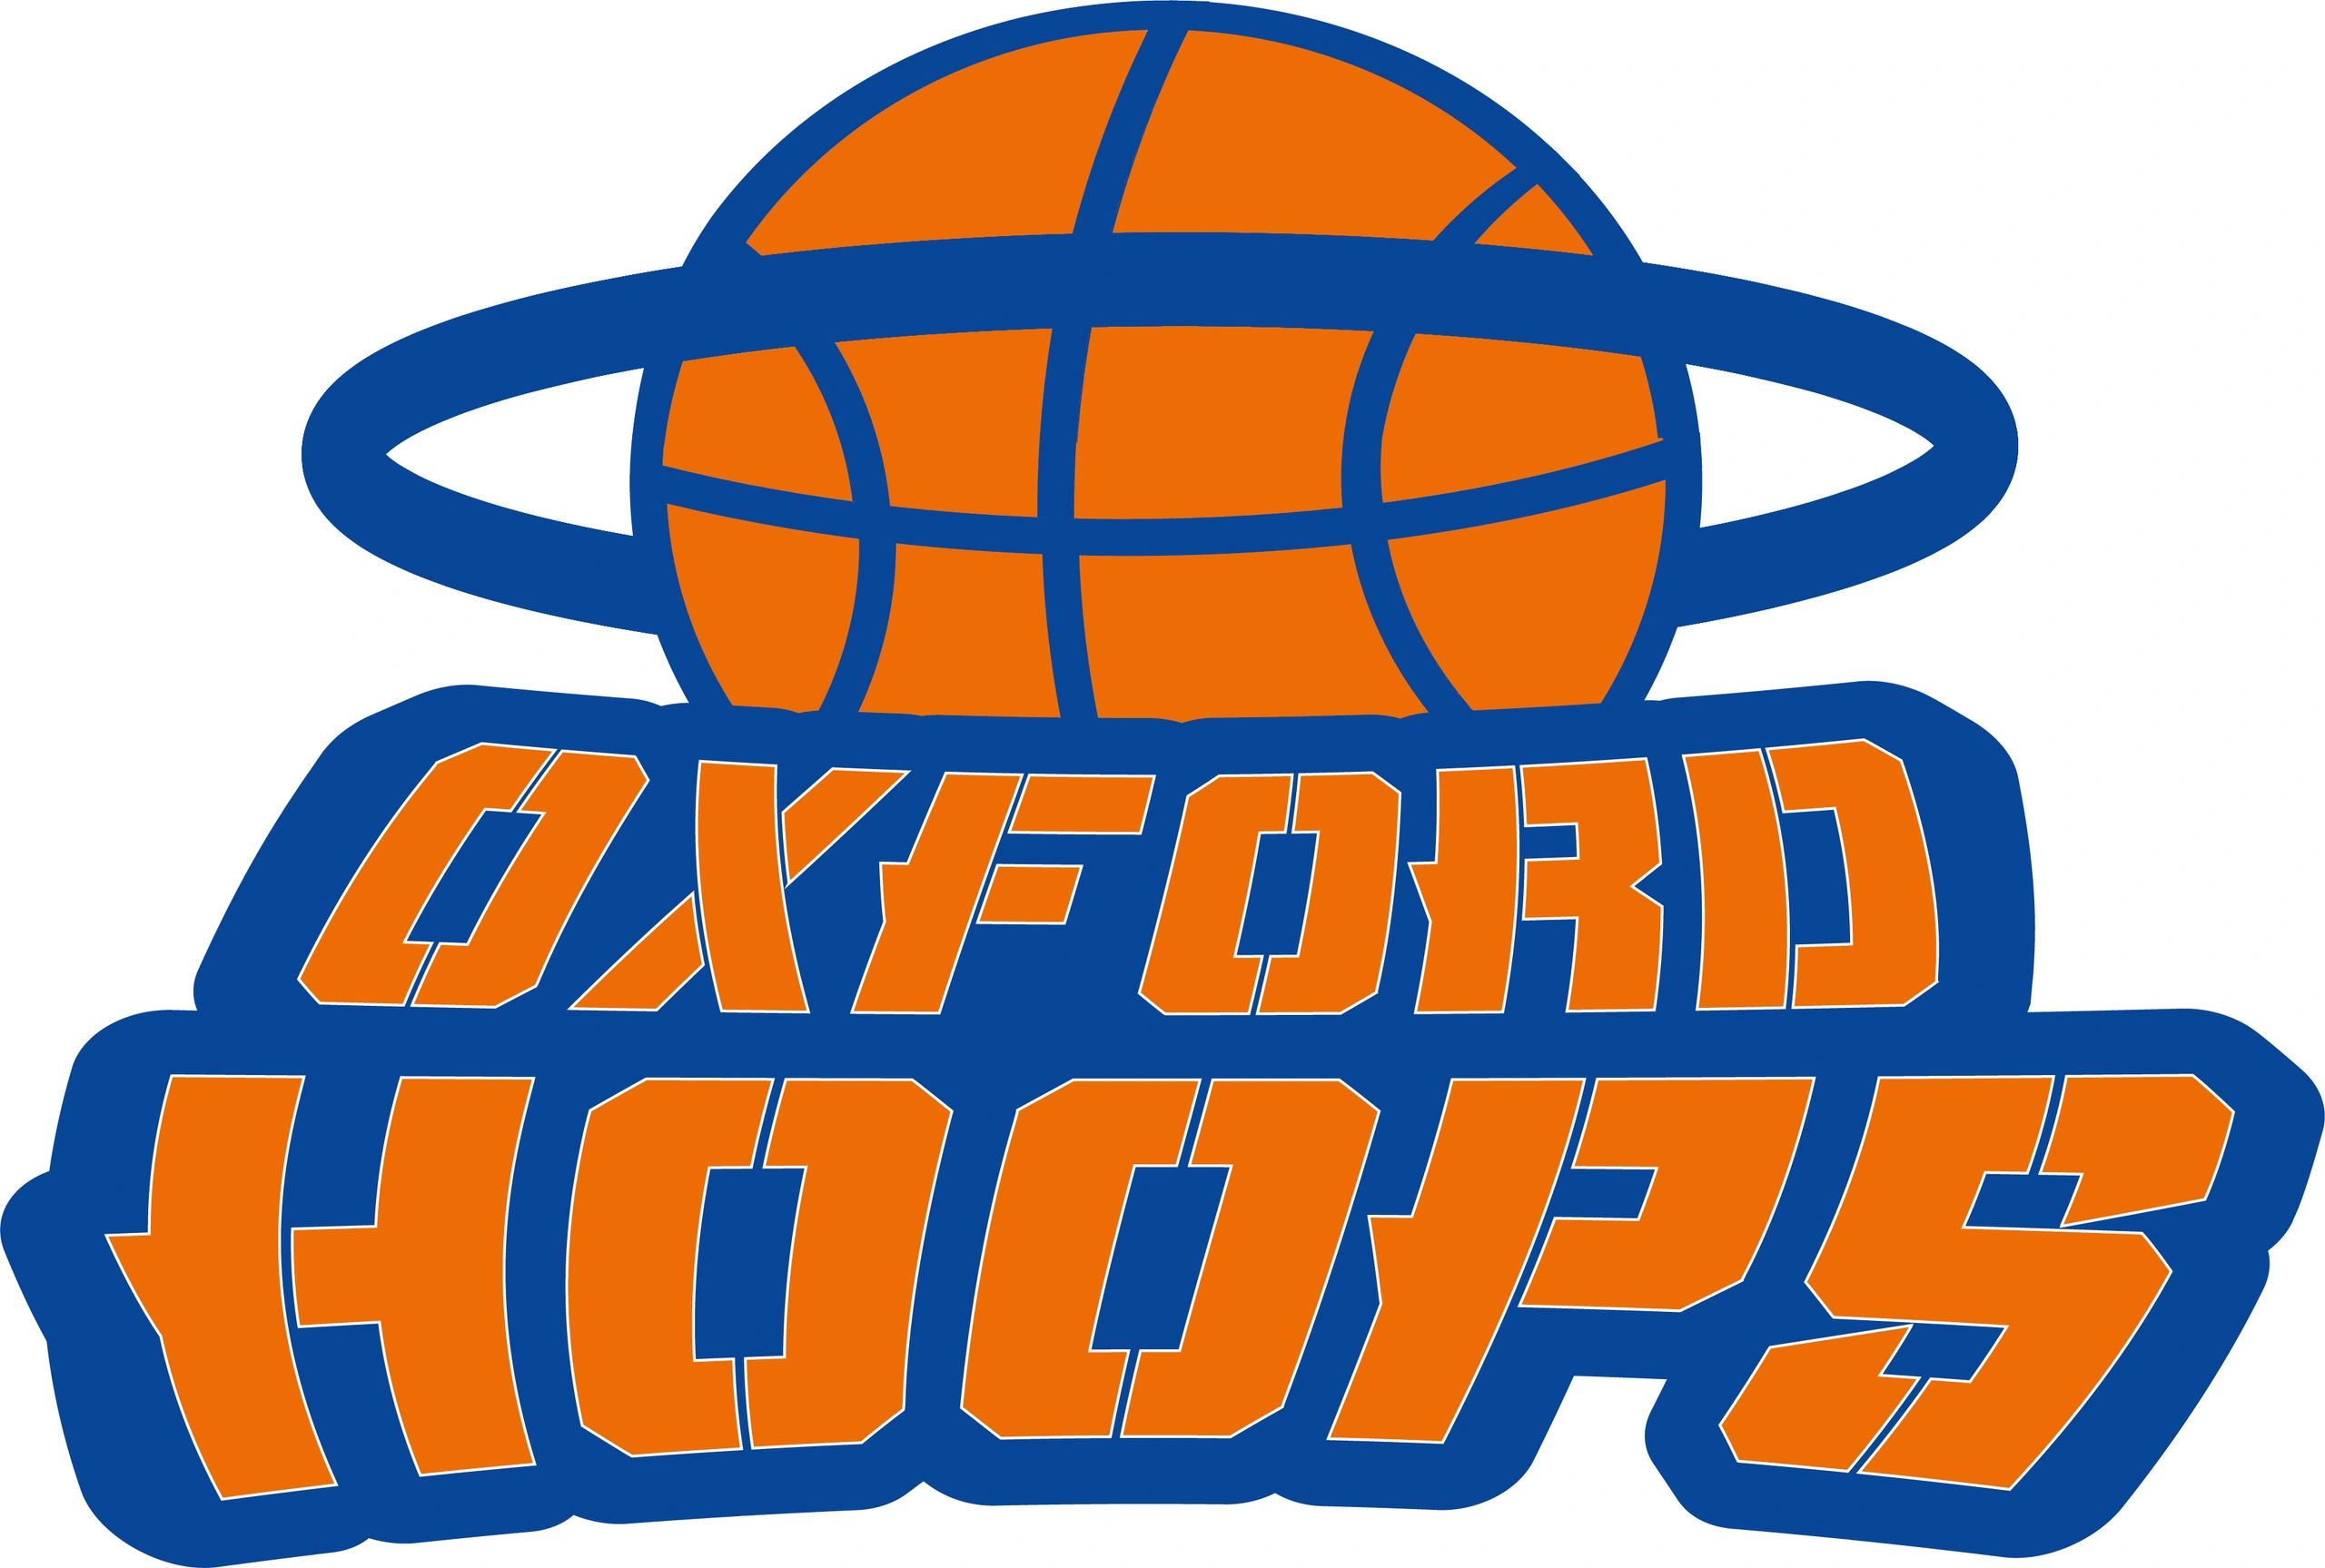 Oxford Basketball Club - Oxford Hoops Basketball Club